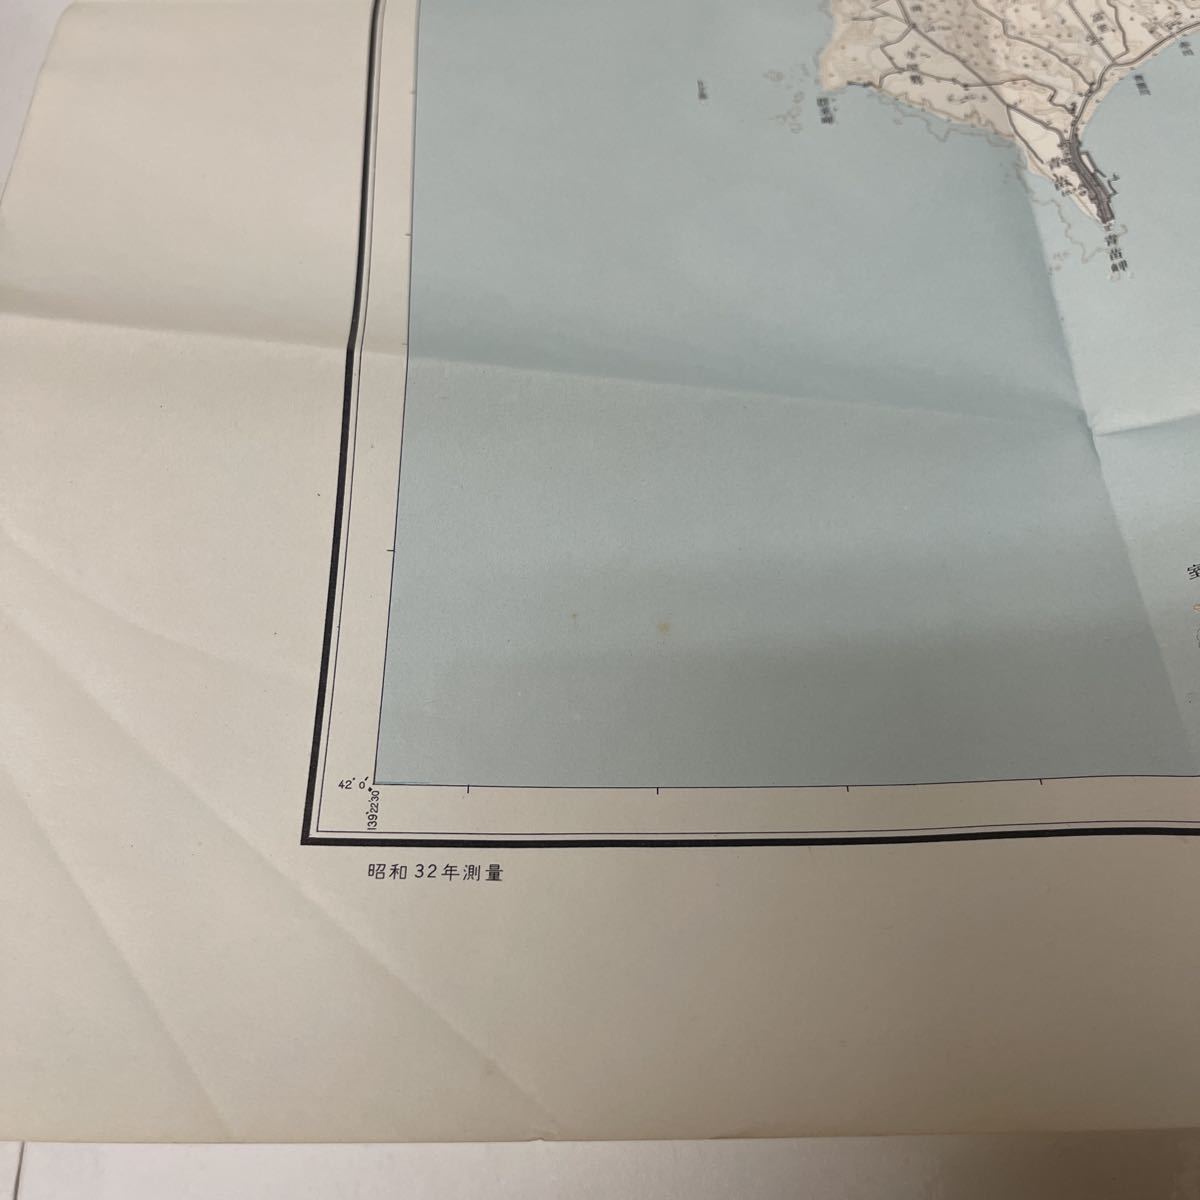 古地図 地形図 五万分之一 国土地理院 昭和32年測量 昭和36年発行 奥尻島南部 北海道_画像4